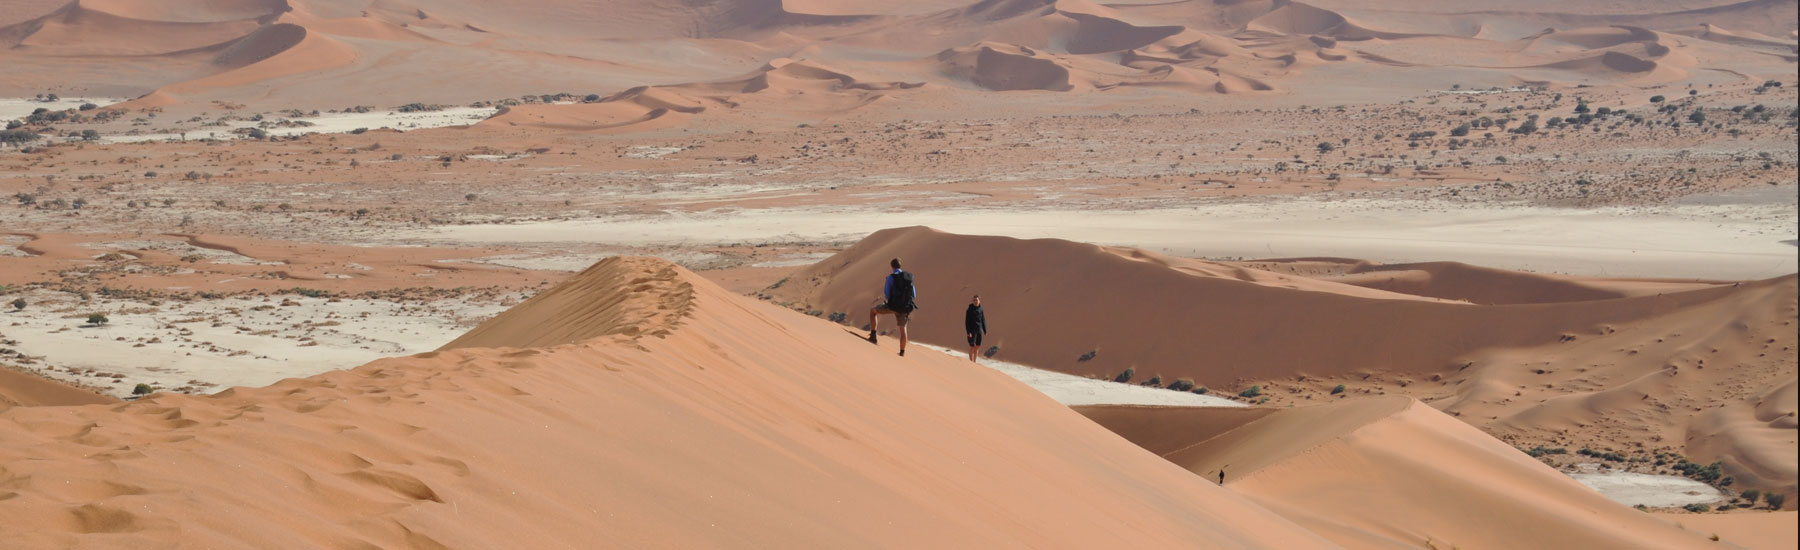 Sossusvlei Namib Desert Fly-in Adventure 